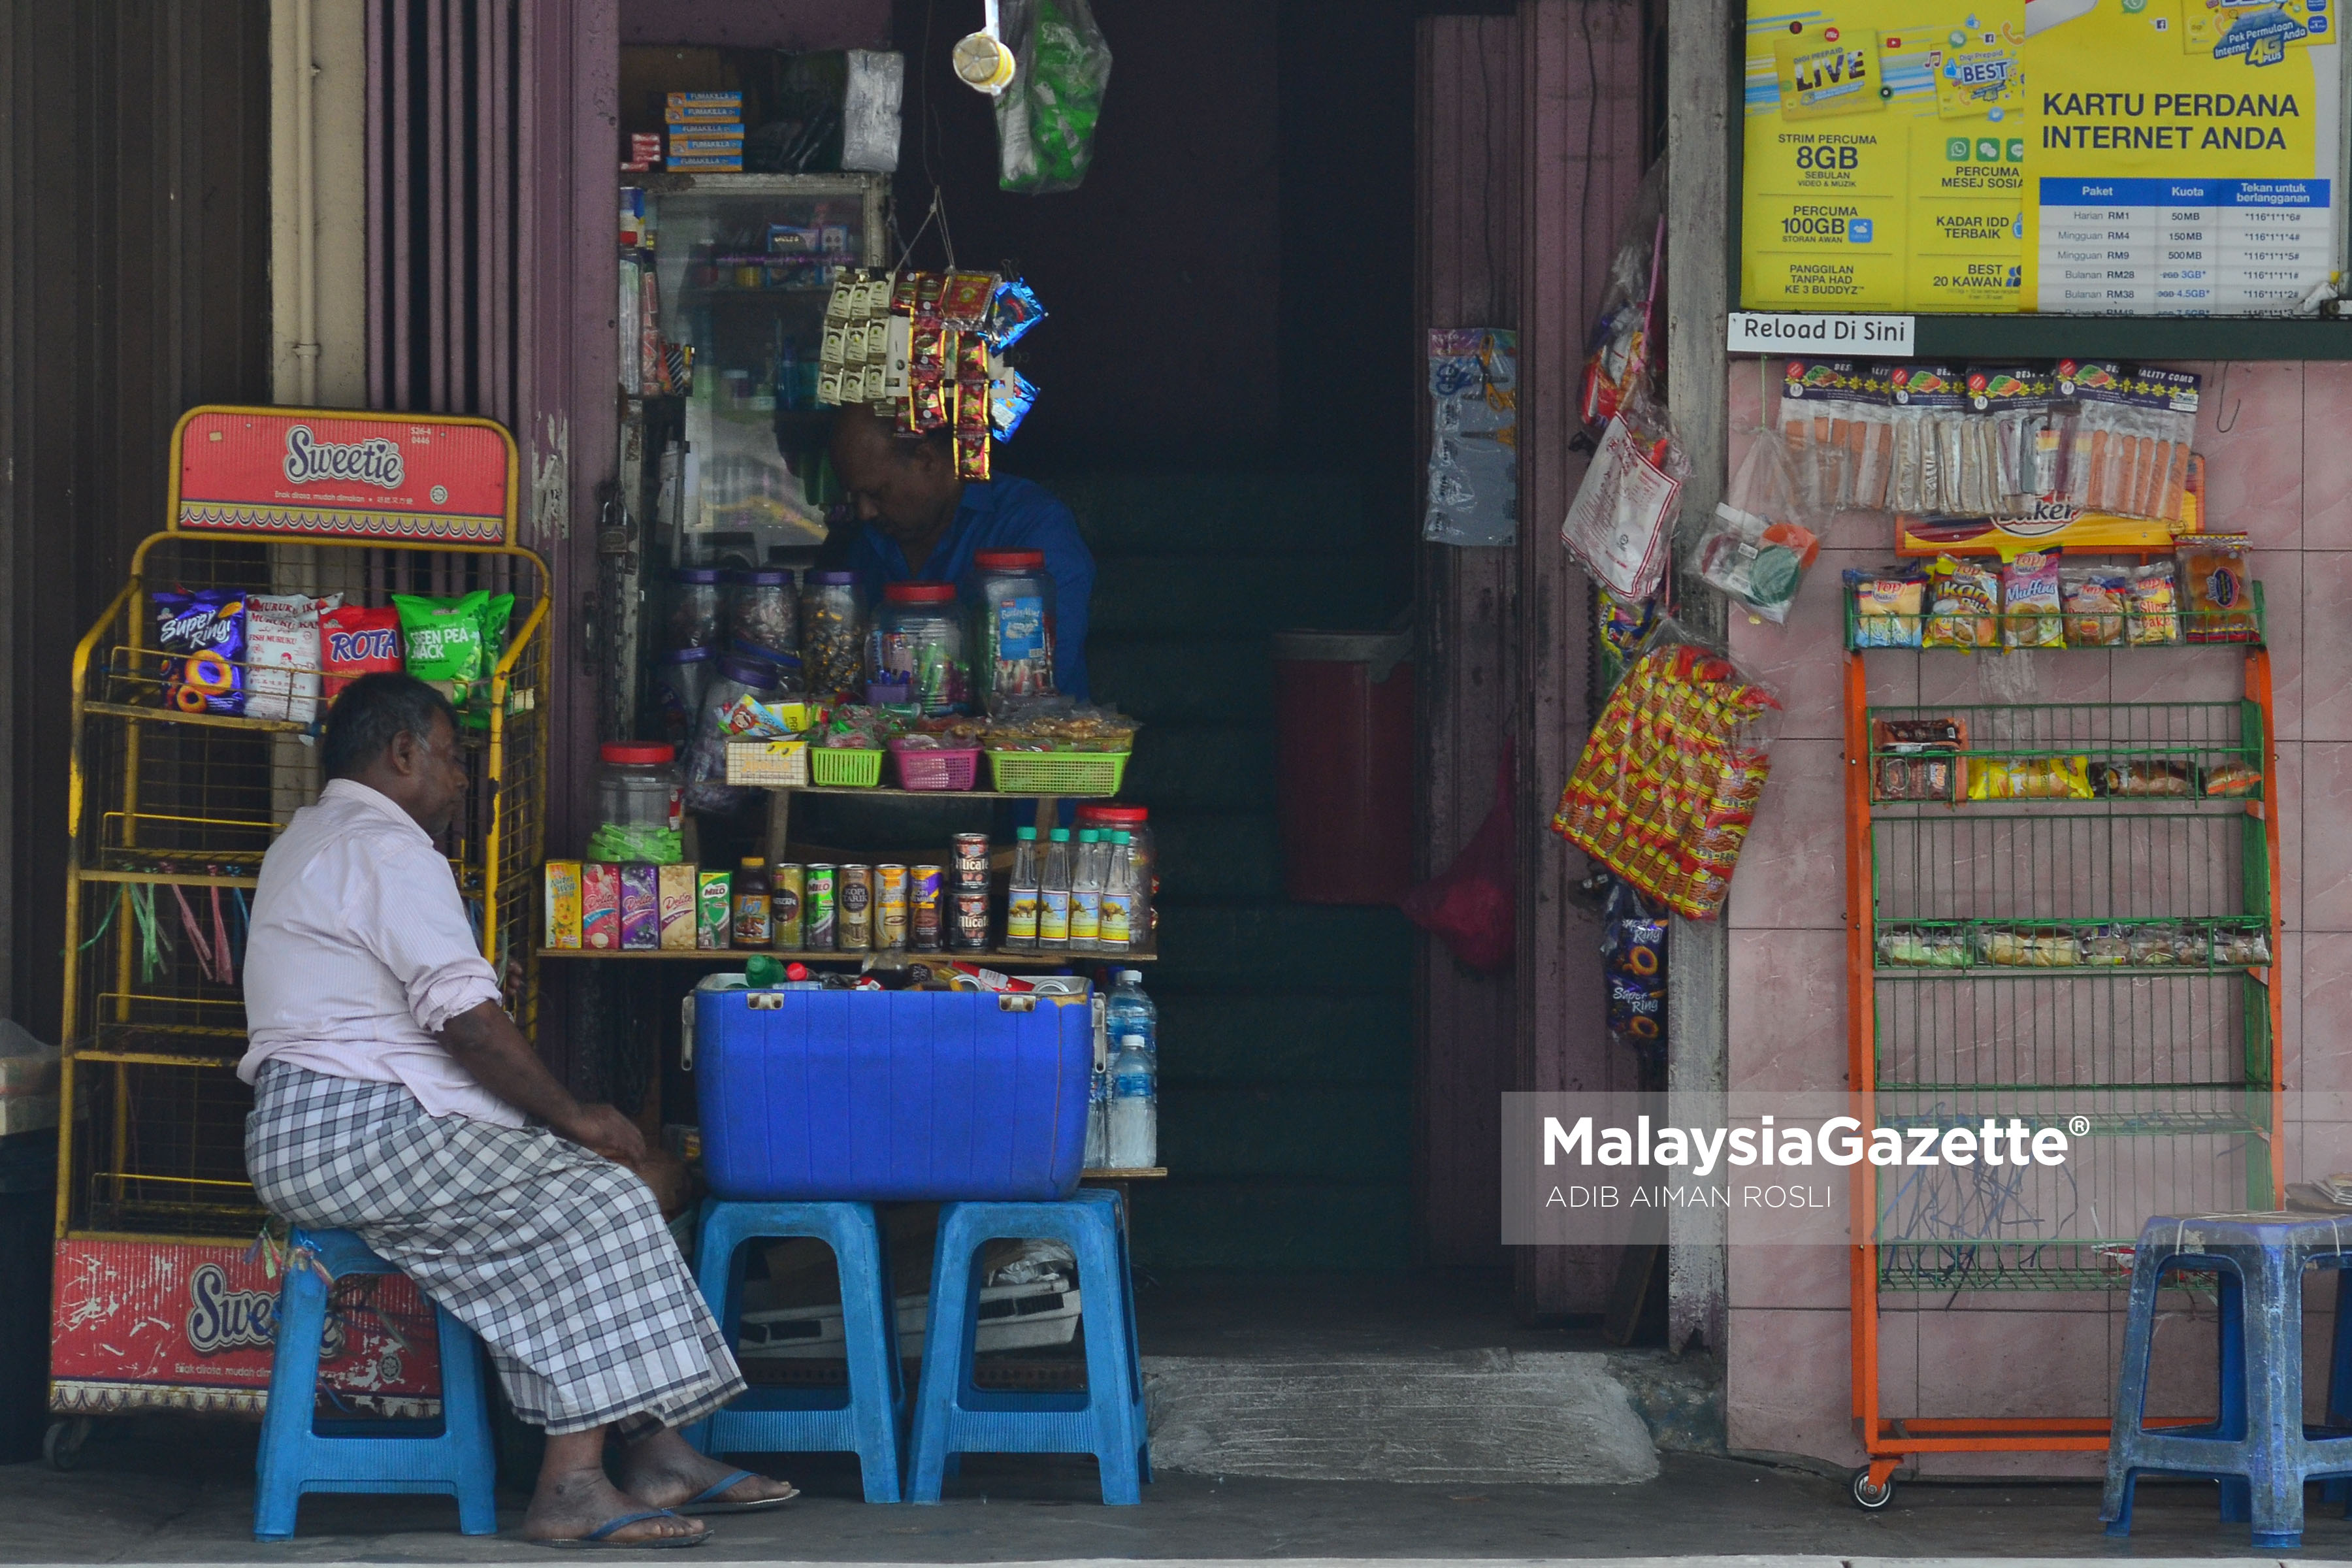 Dua orang peniaga menuggu pelanggan di hadapan kedai ketika tinjauan lensa Malaysia Gazette sempena cuti umum Hari Wilayah Persekutuan di Jalan Chow Kit, Kuala Lumpur. foto ADIB AIMAN ROSLI, 01 FEBRUARI 2017